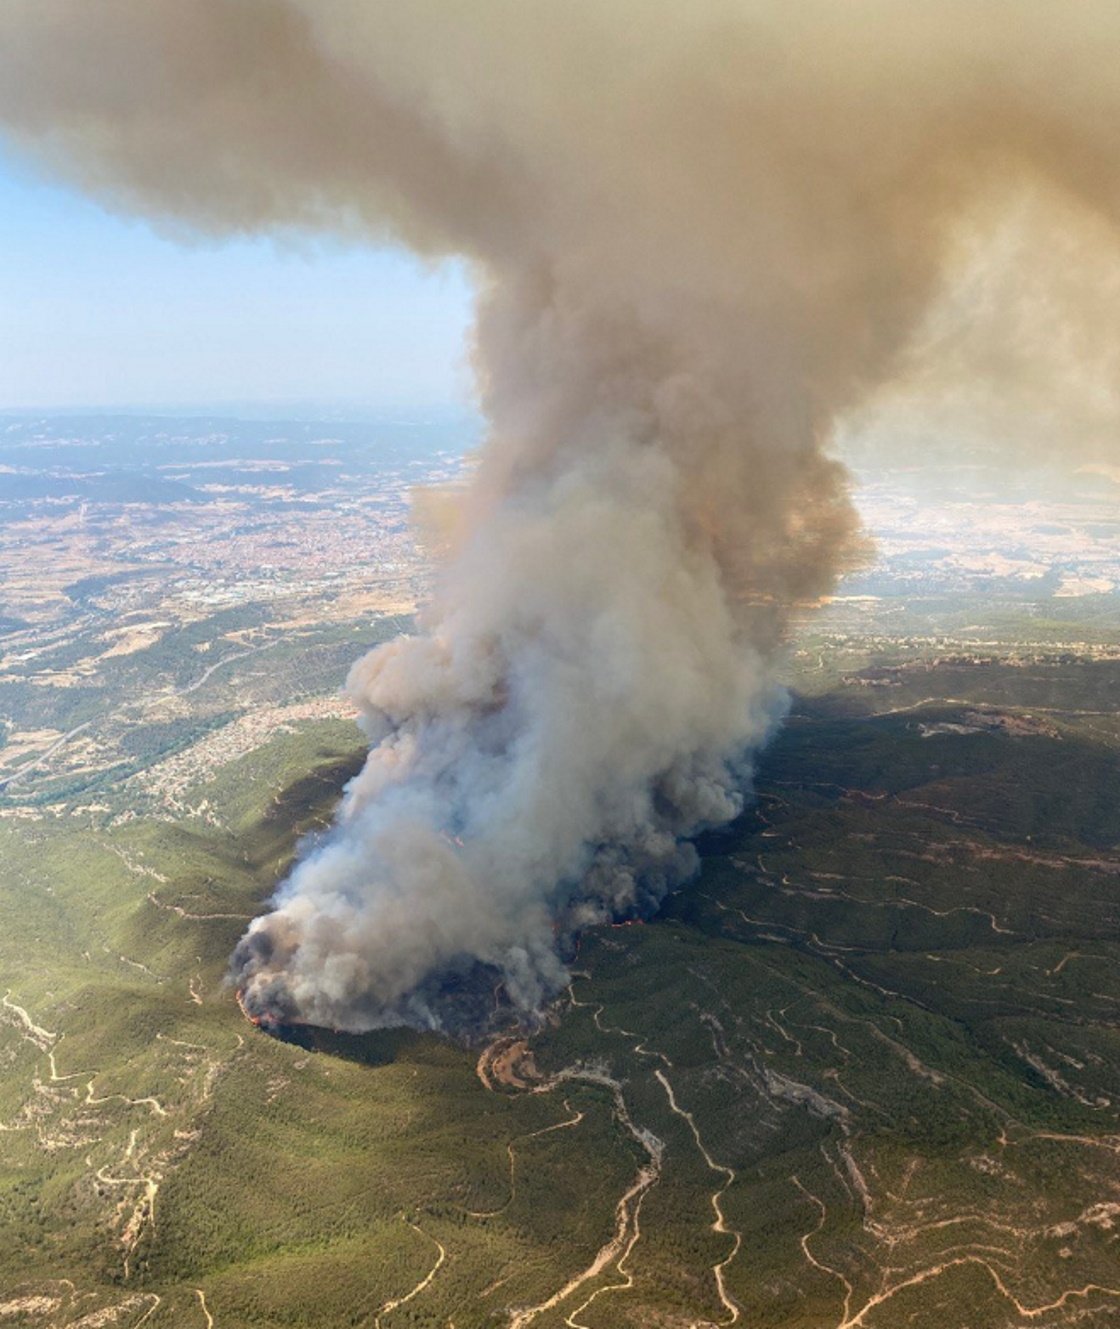 L'incendi al Pont de Vilomara ja afecta 1.200 hectàrees i podria arribar a les 6.000